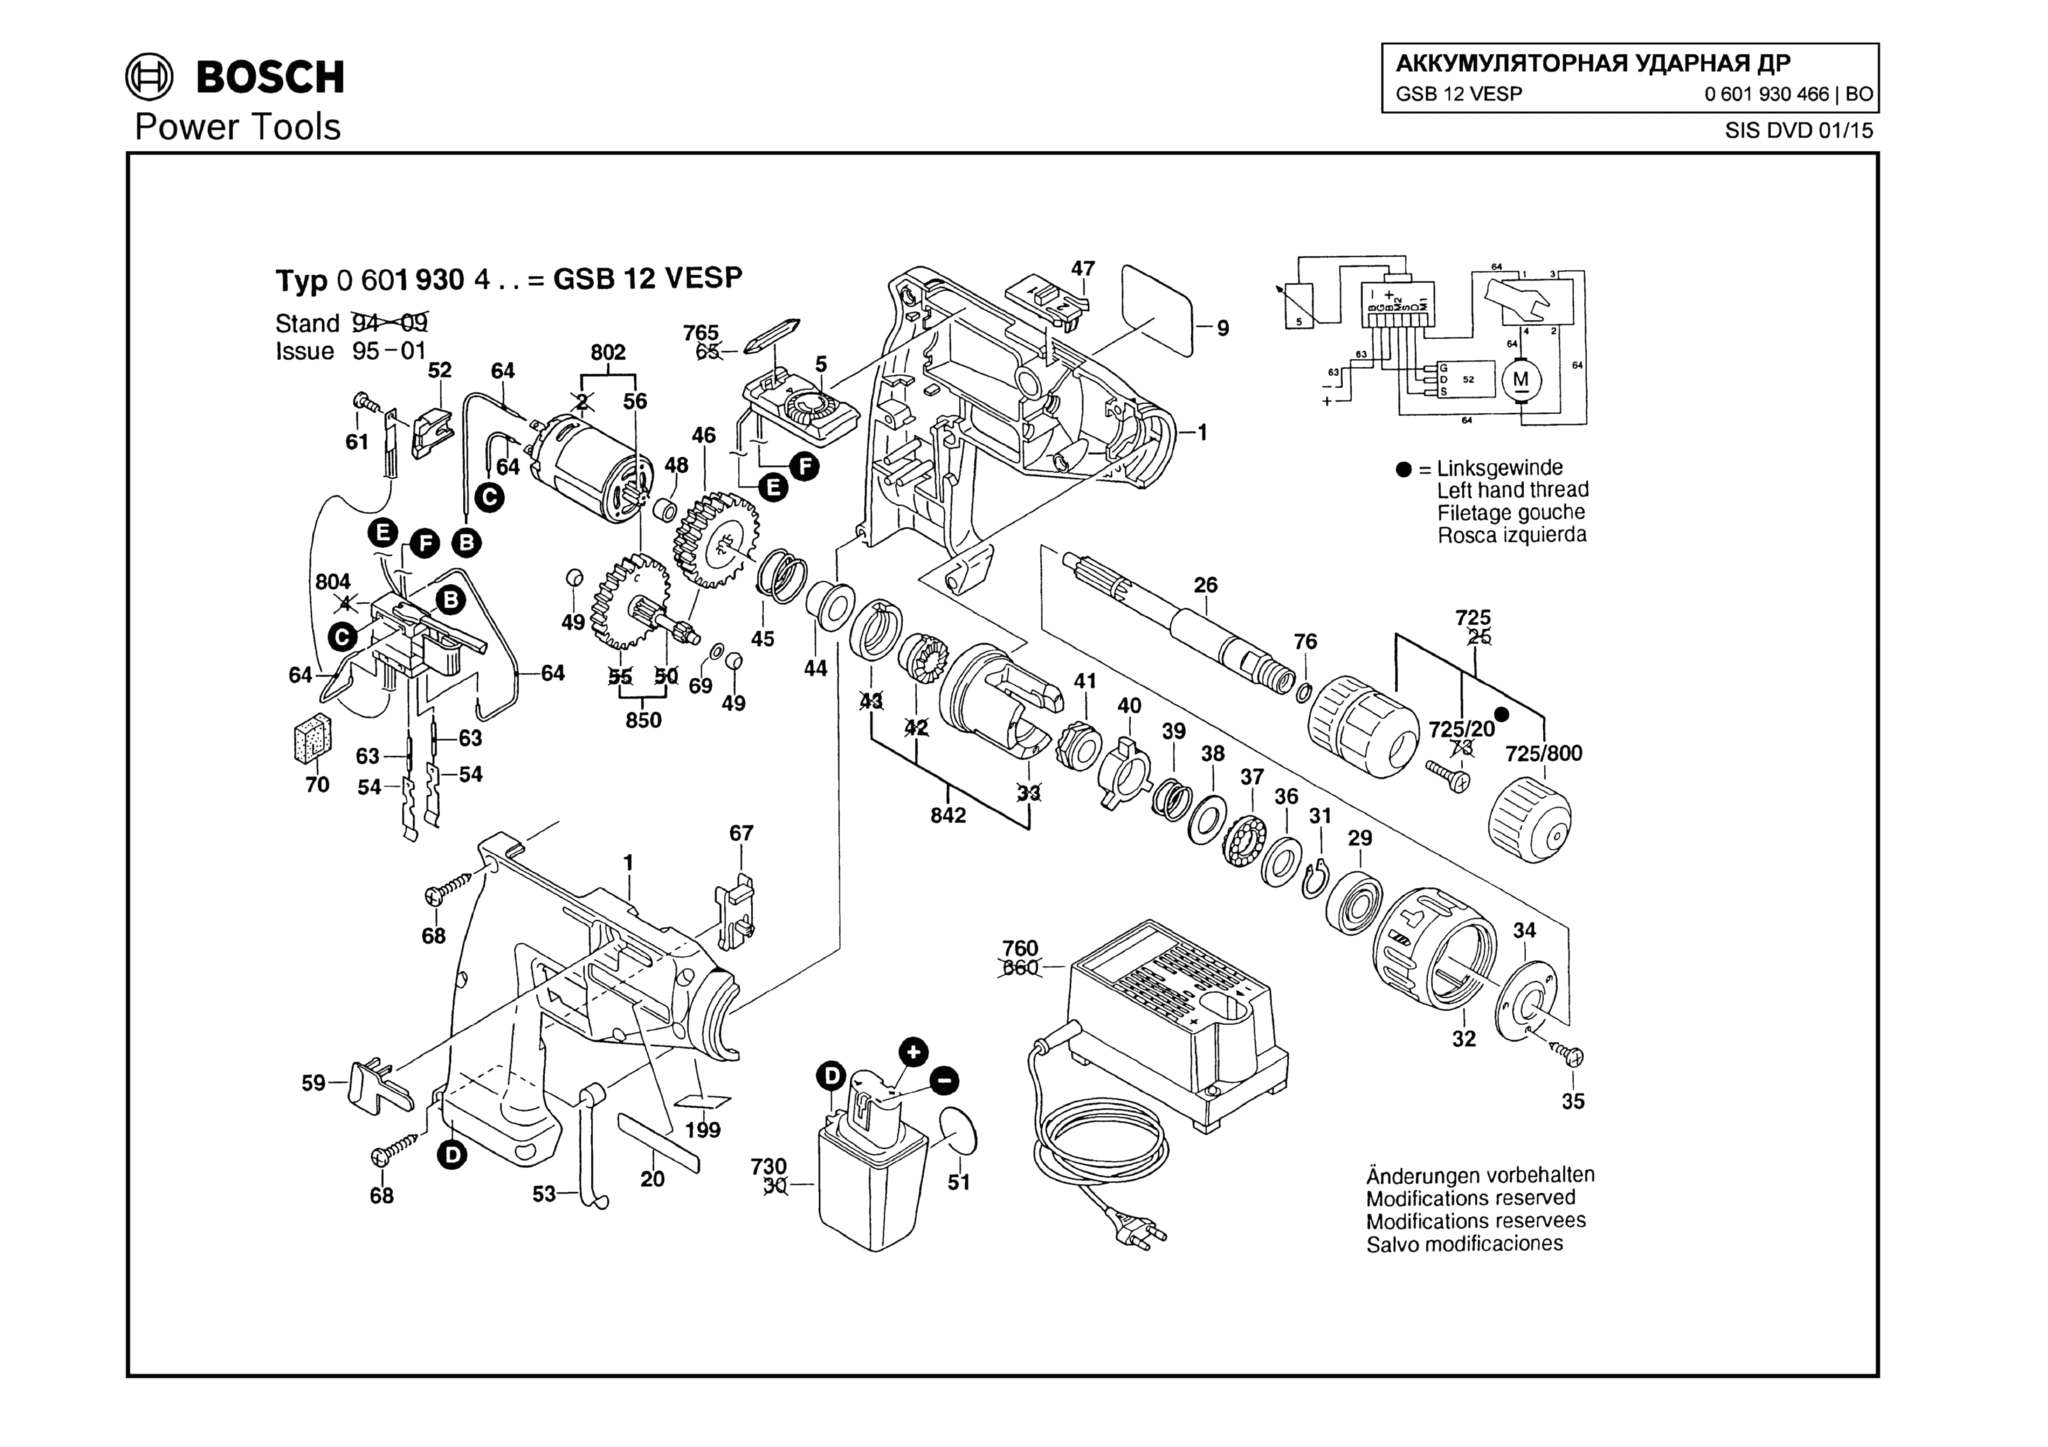 Запчасти, схема и деталировка Bosch GSB 12 VESP (ТИП 0601930466)